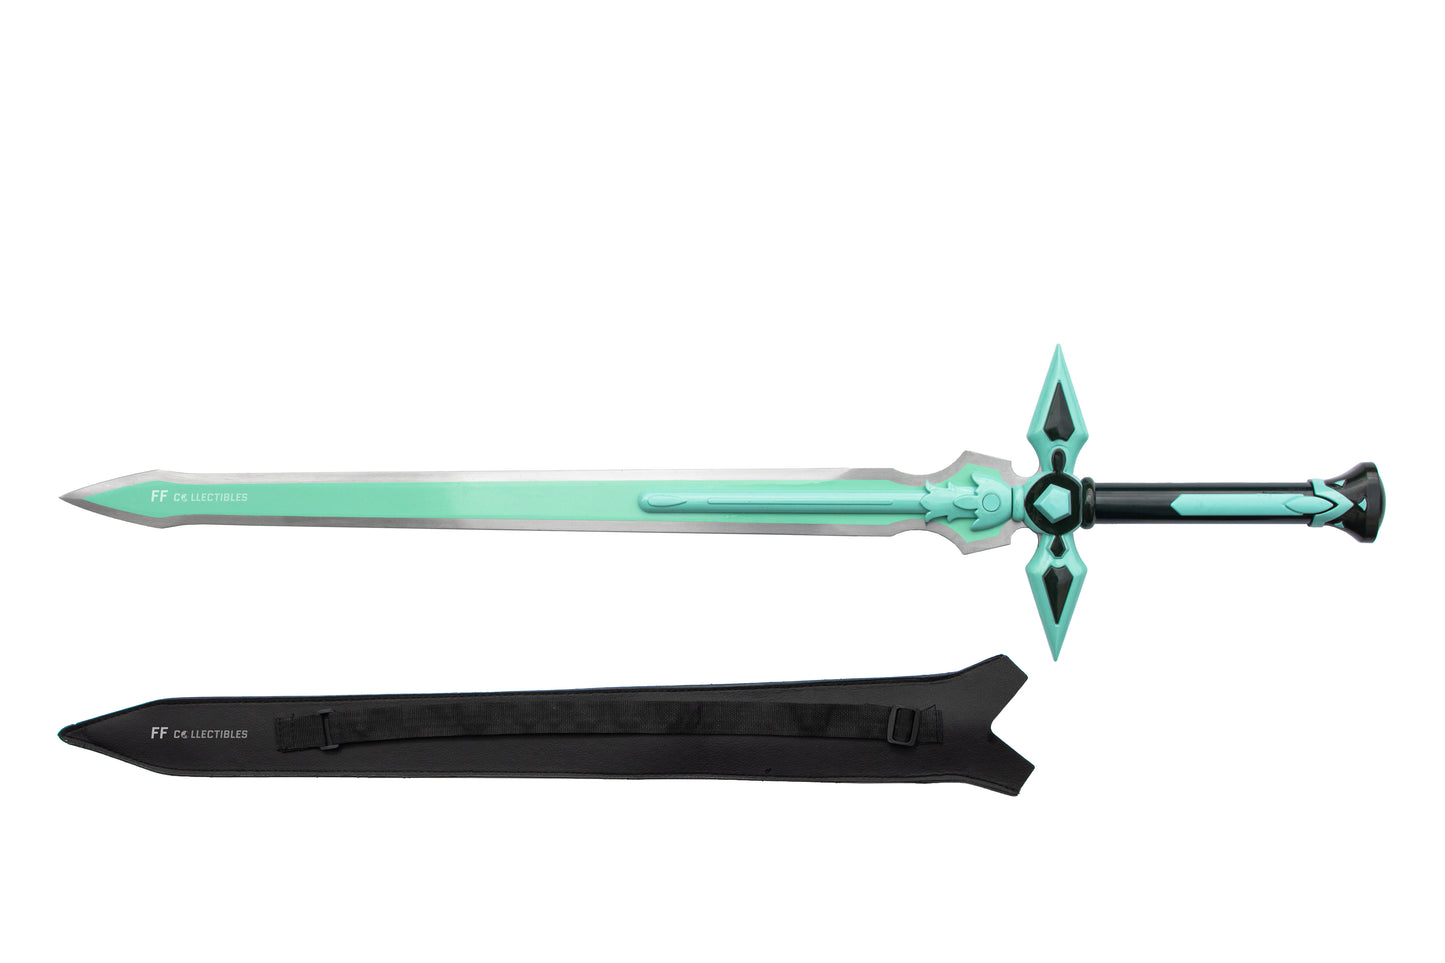 SWORD ART ONLINE - KIRITO'S SWORD, DARK REPULSER (with FREE sword stand)